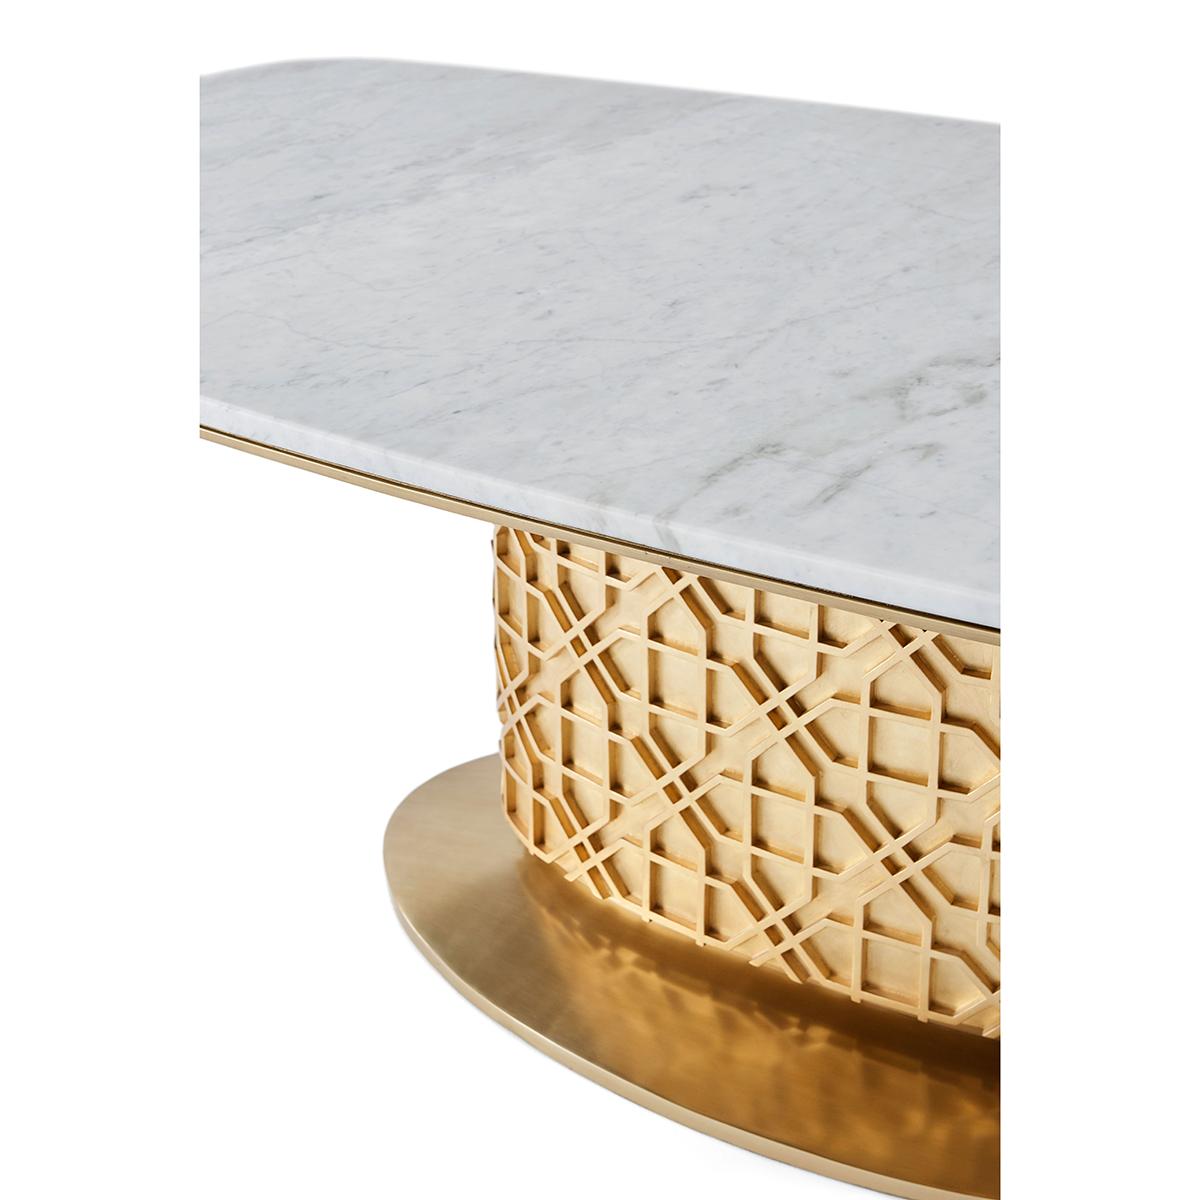 Ein feiner Esstisch mit einer rumpfförmigen Bianco Carrara-Platte mit Metallleisten-Detail. Über einer vergoldeten Basrelief-Säule mit von den Moguln inspirierten Gittersternen auf einem gewölbten ovalen Metallsockel.

Abmessungen: 86,5